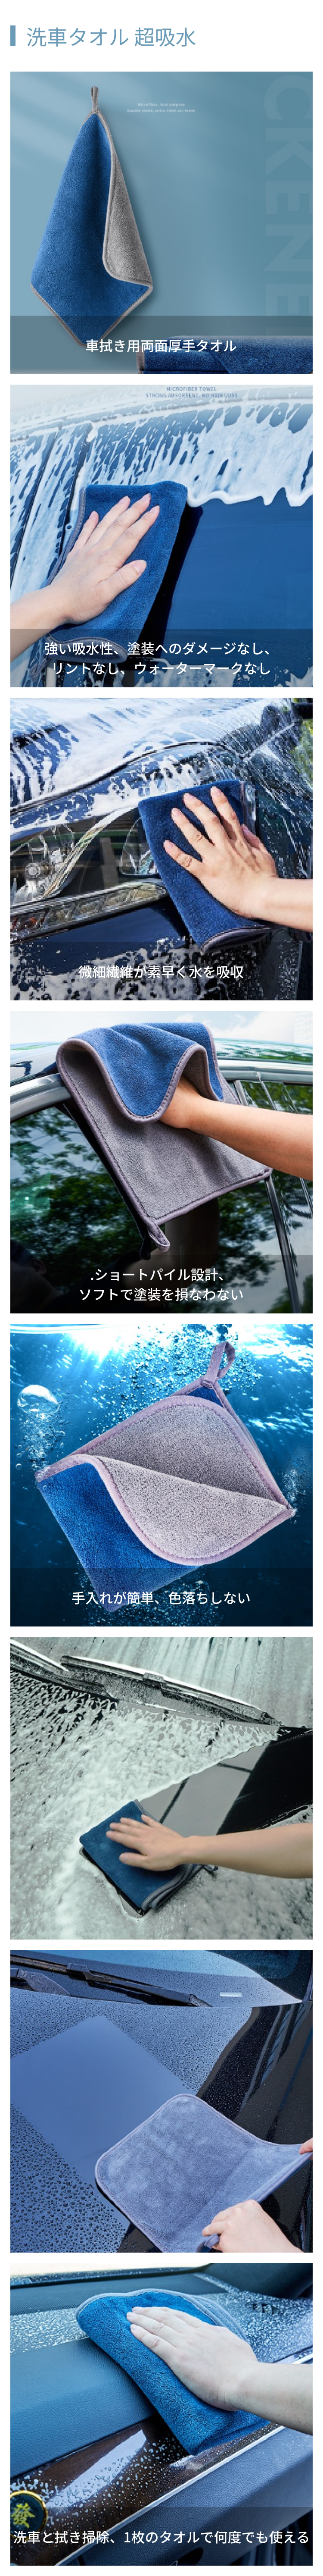 洗车毛巾超吸水.png